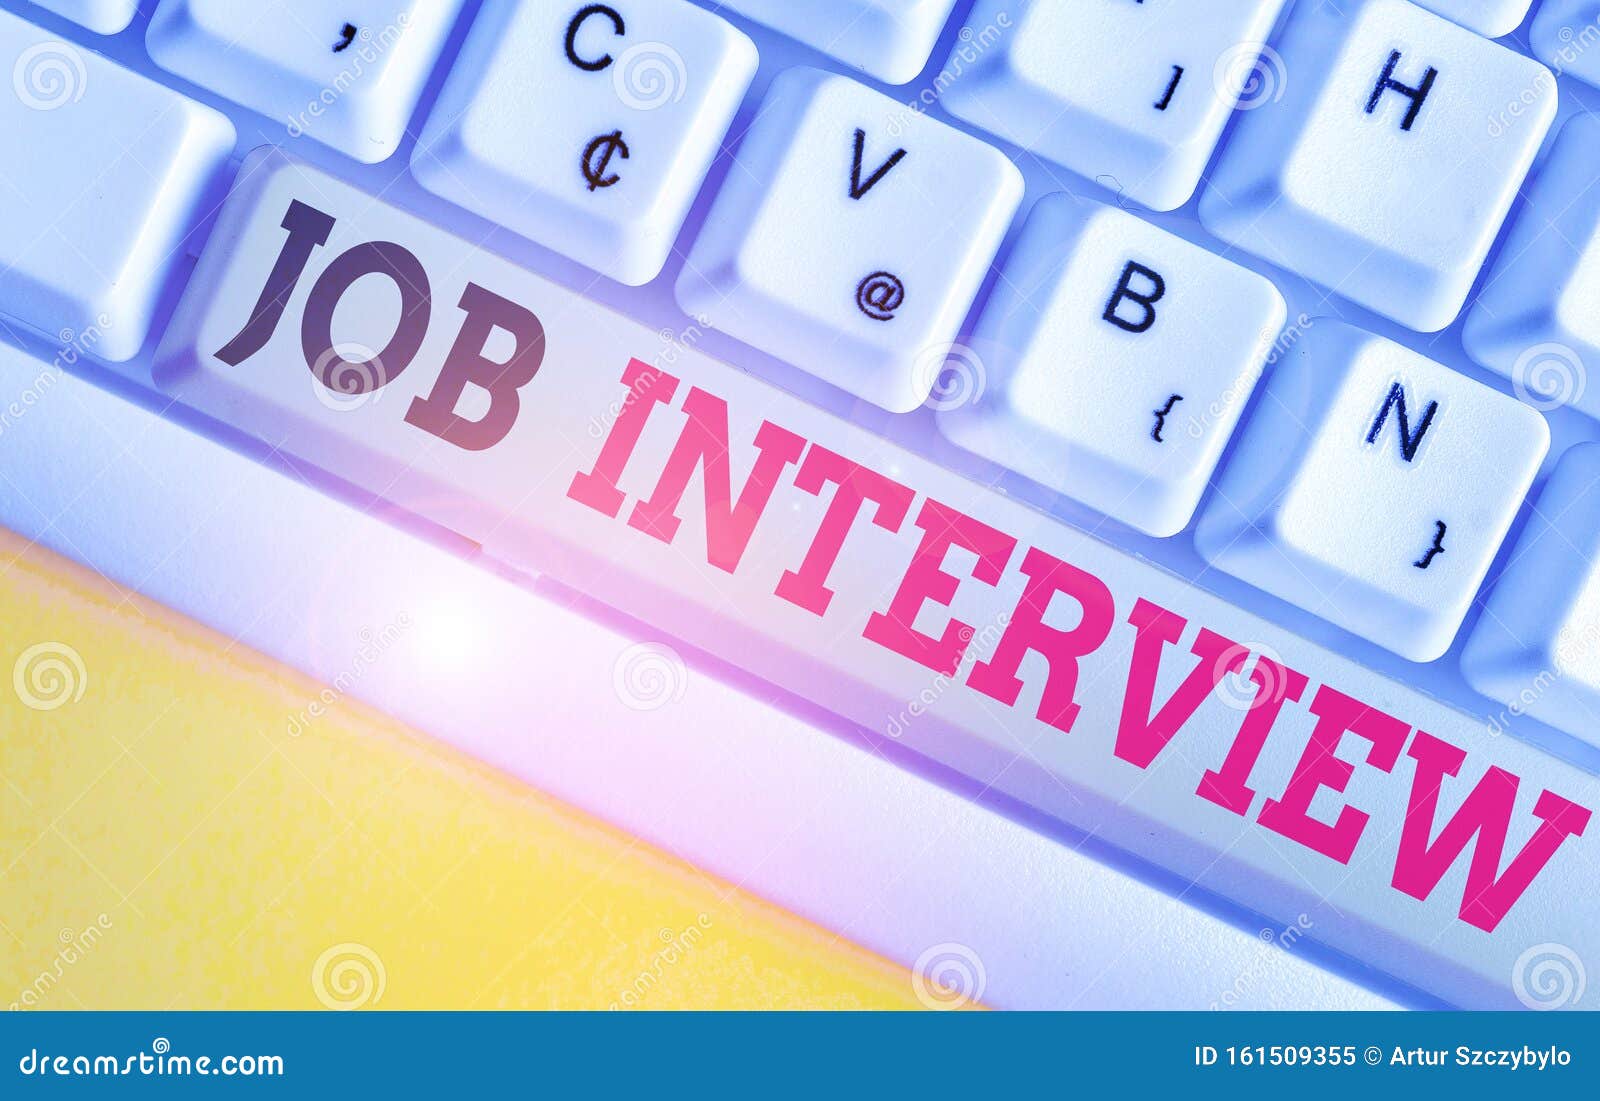 Job recruitment questions on computer